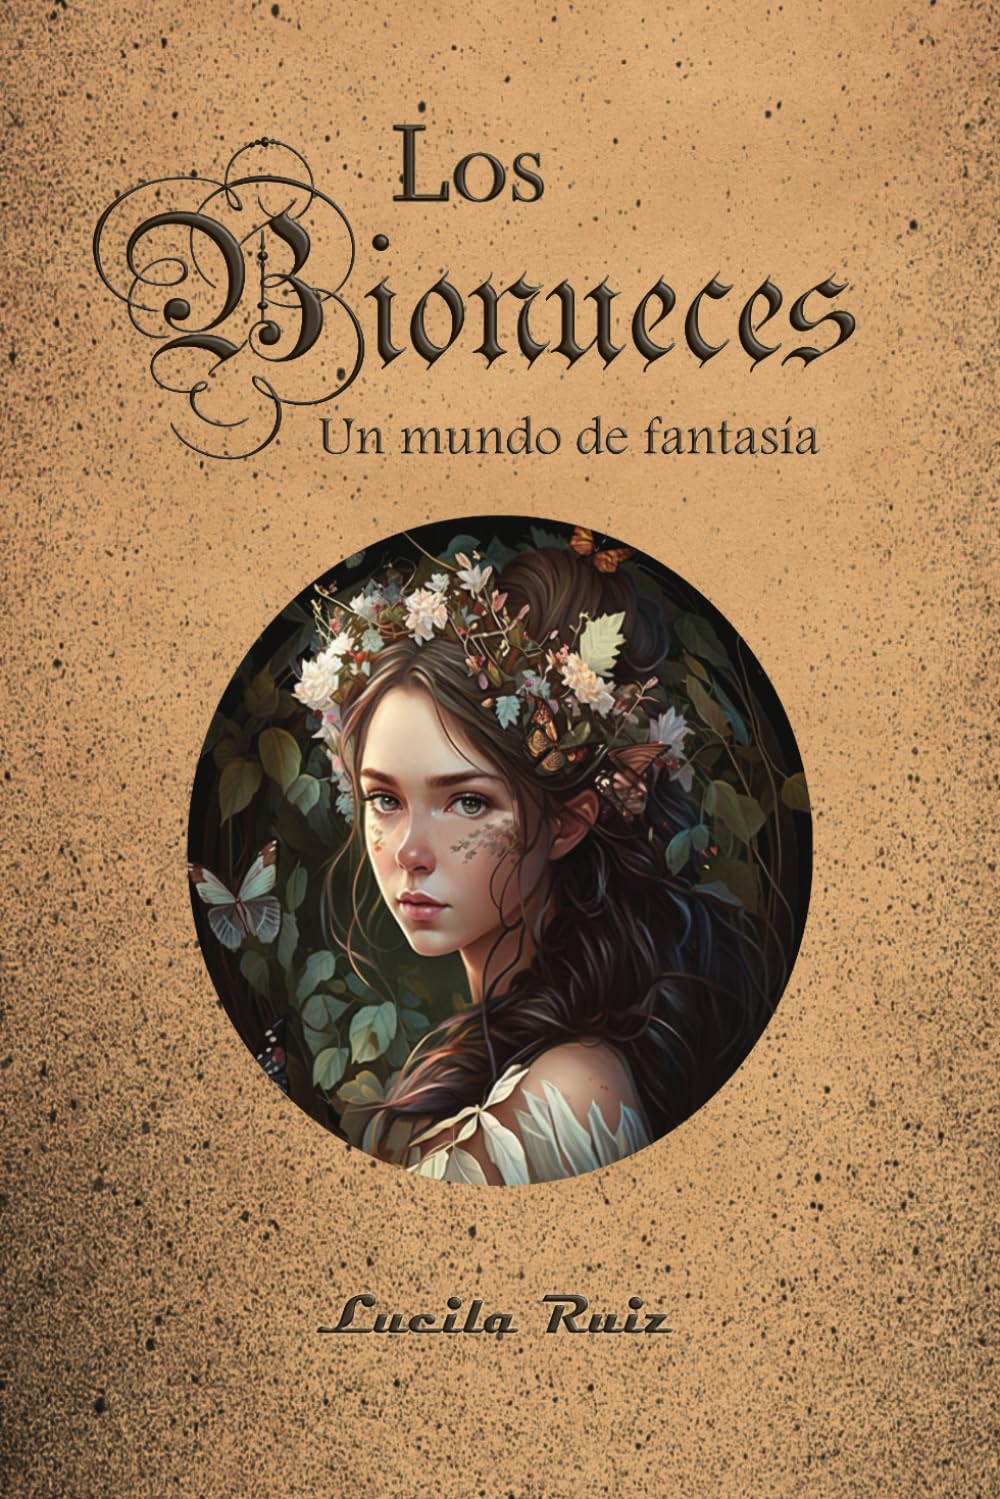 Los bionueces, escrita por Lucila Ruiz